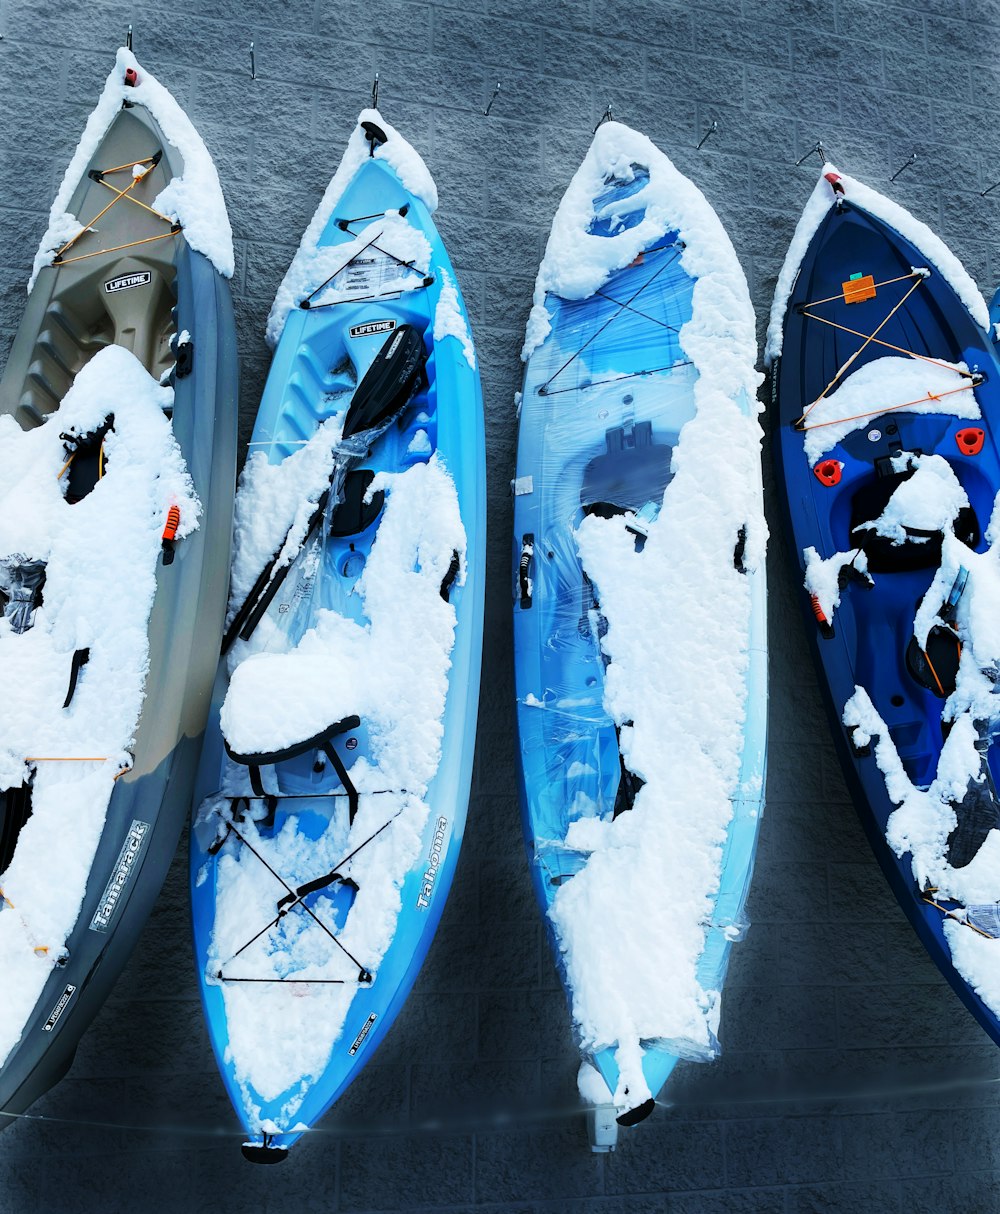 Trois kayaks couverts de neige assis l’un à côté de l’autre